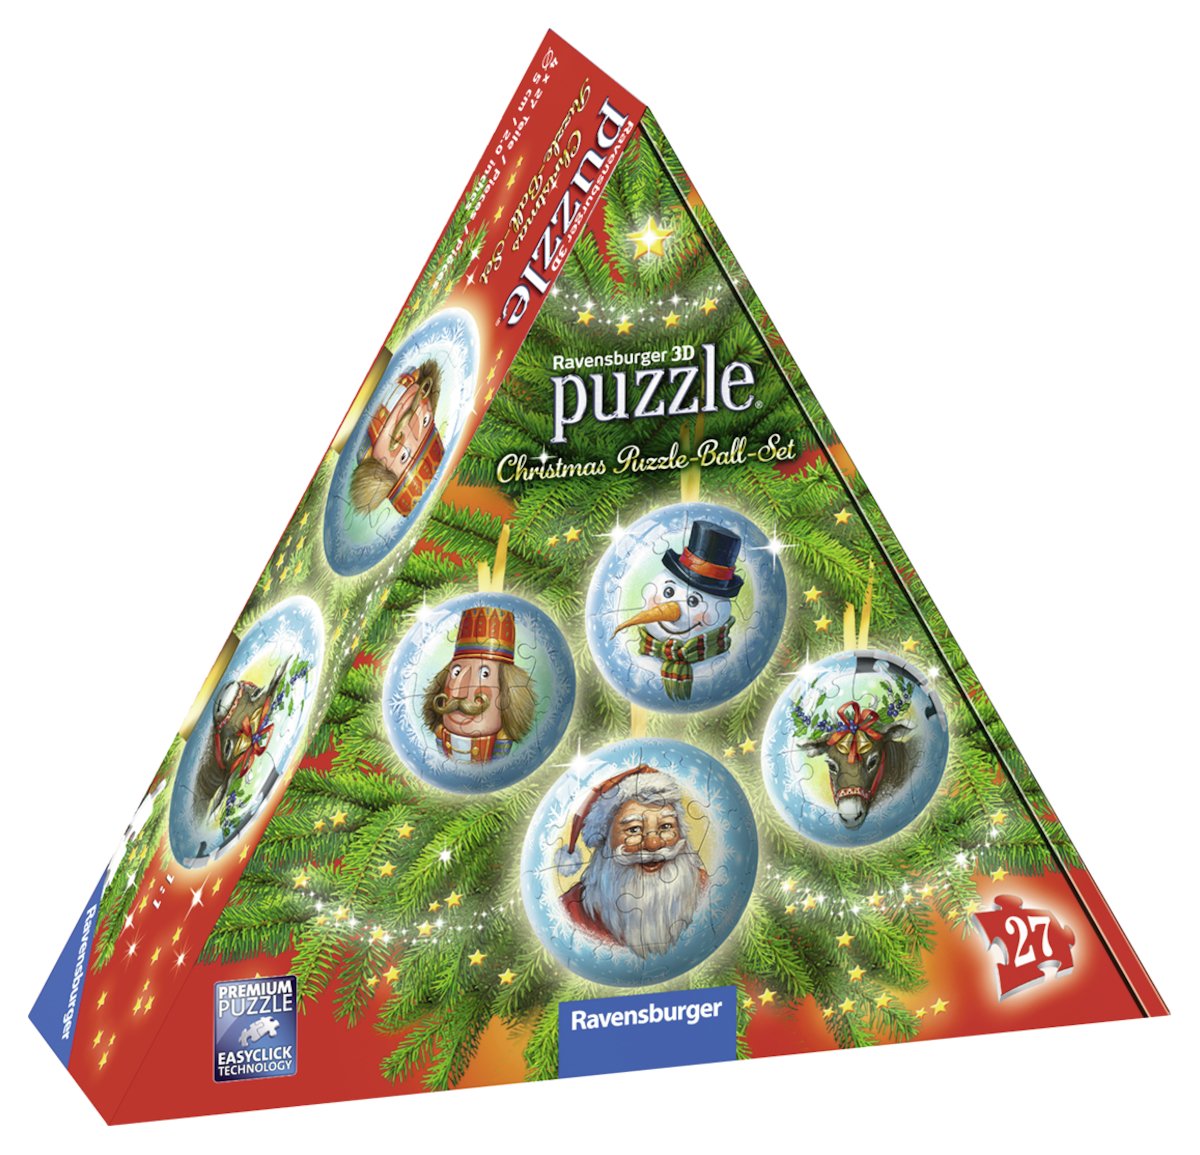 Ravensburger 3D Puzzle 11678 Christmas Puzzle Ball Set